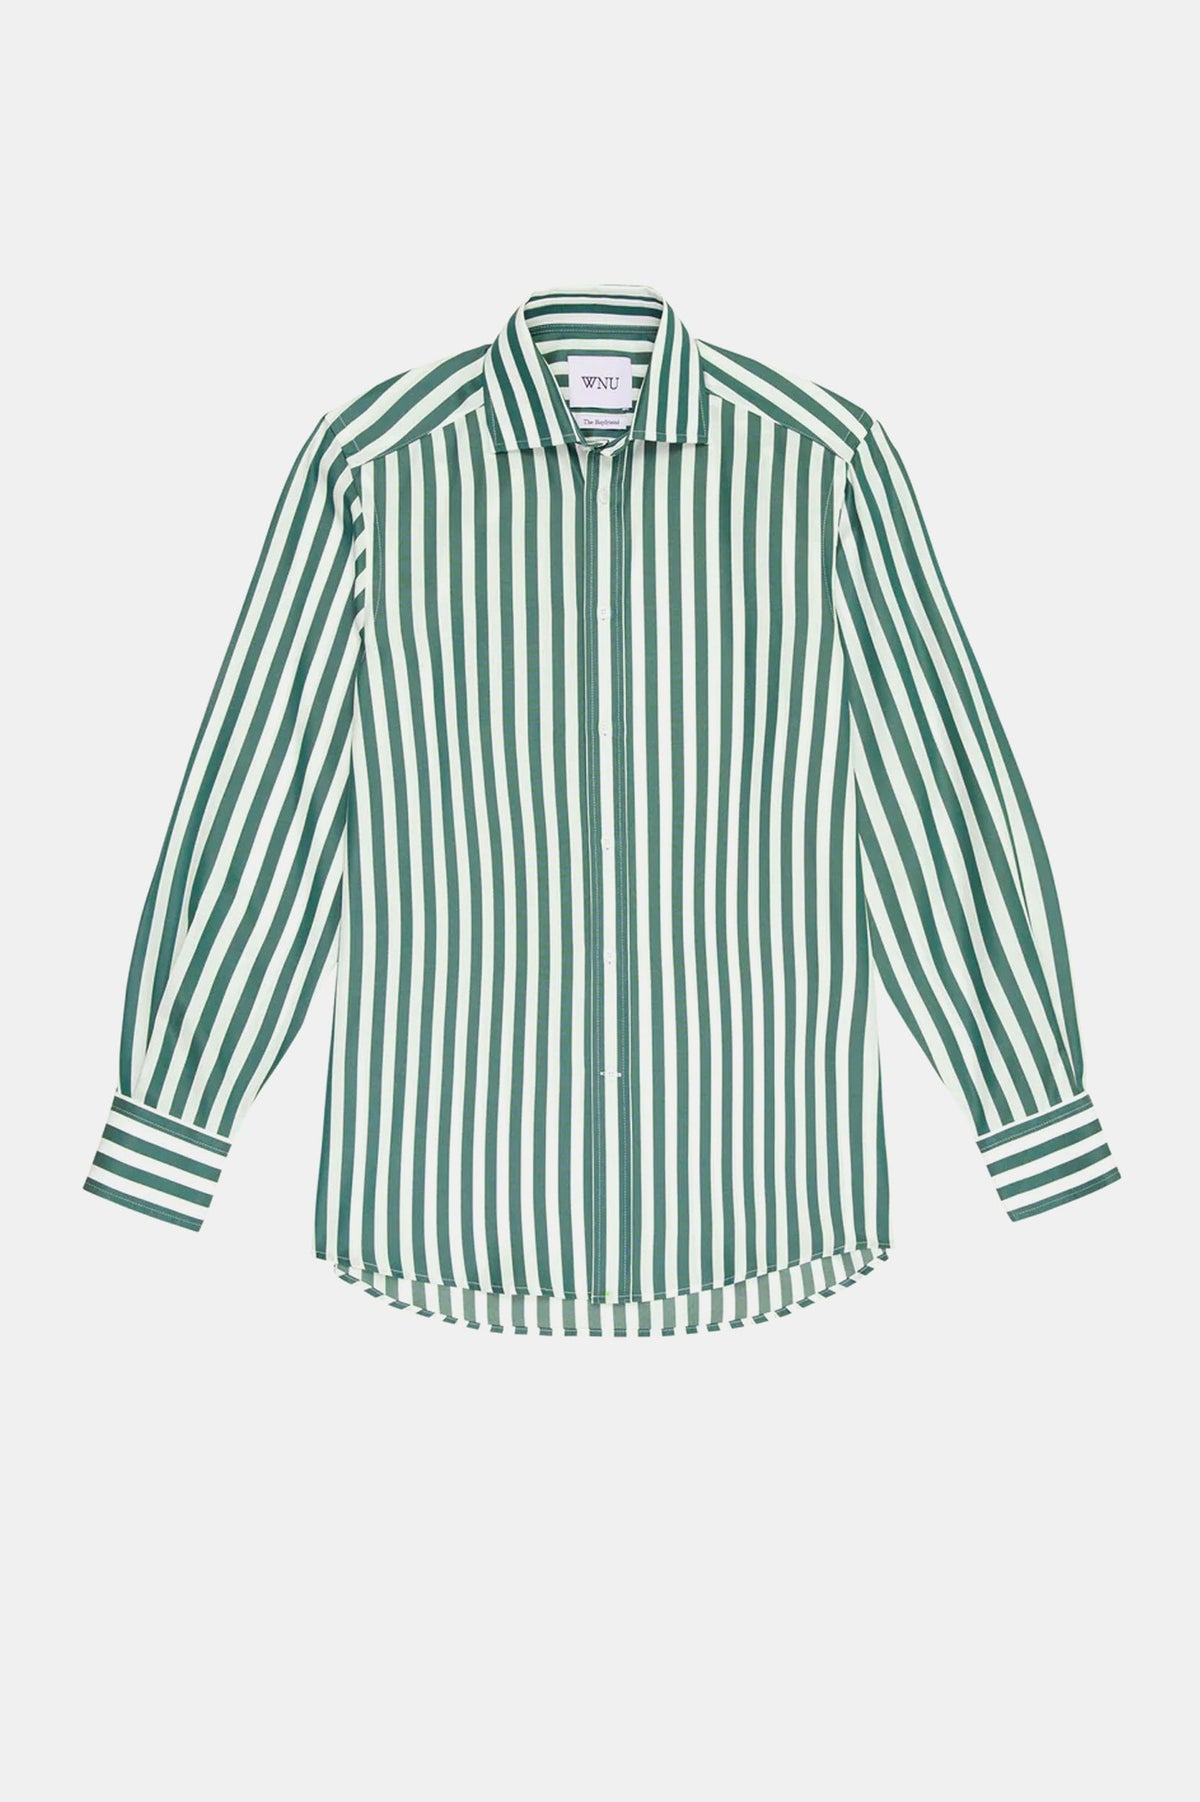 The Boyfriend Shirt in Forest Green Stripe